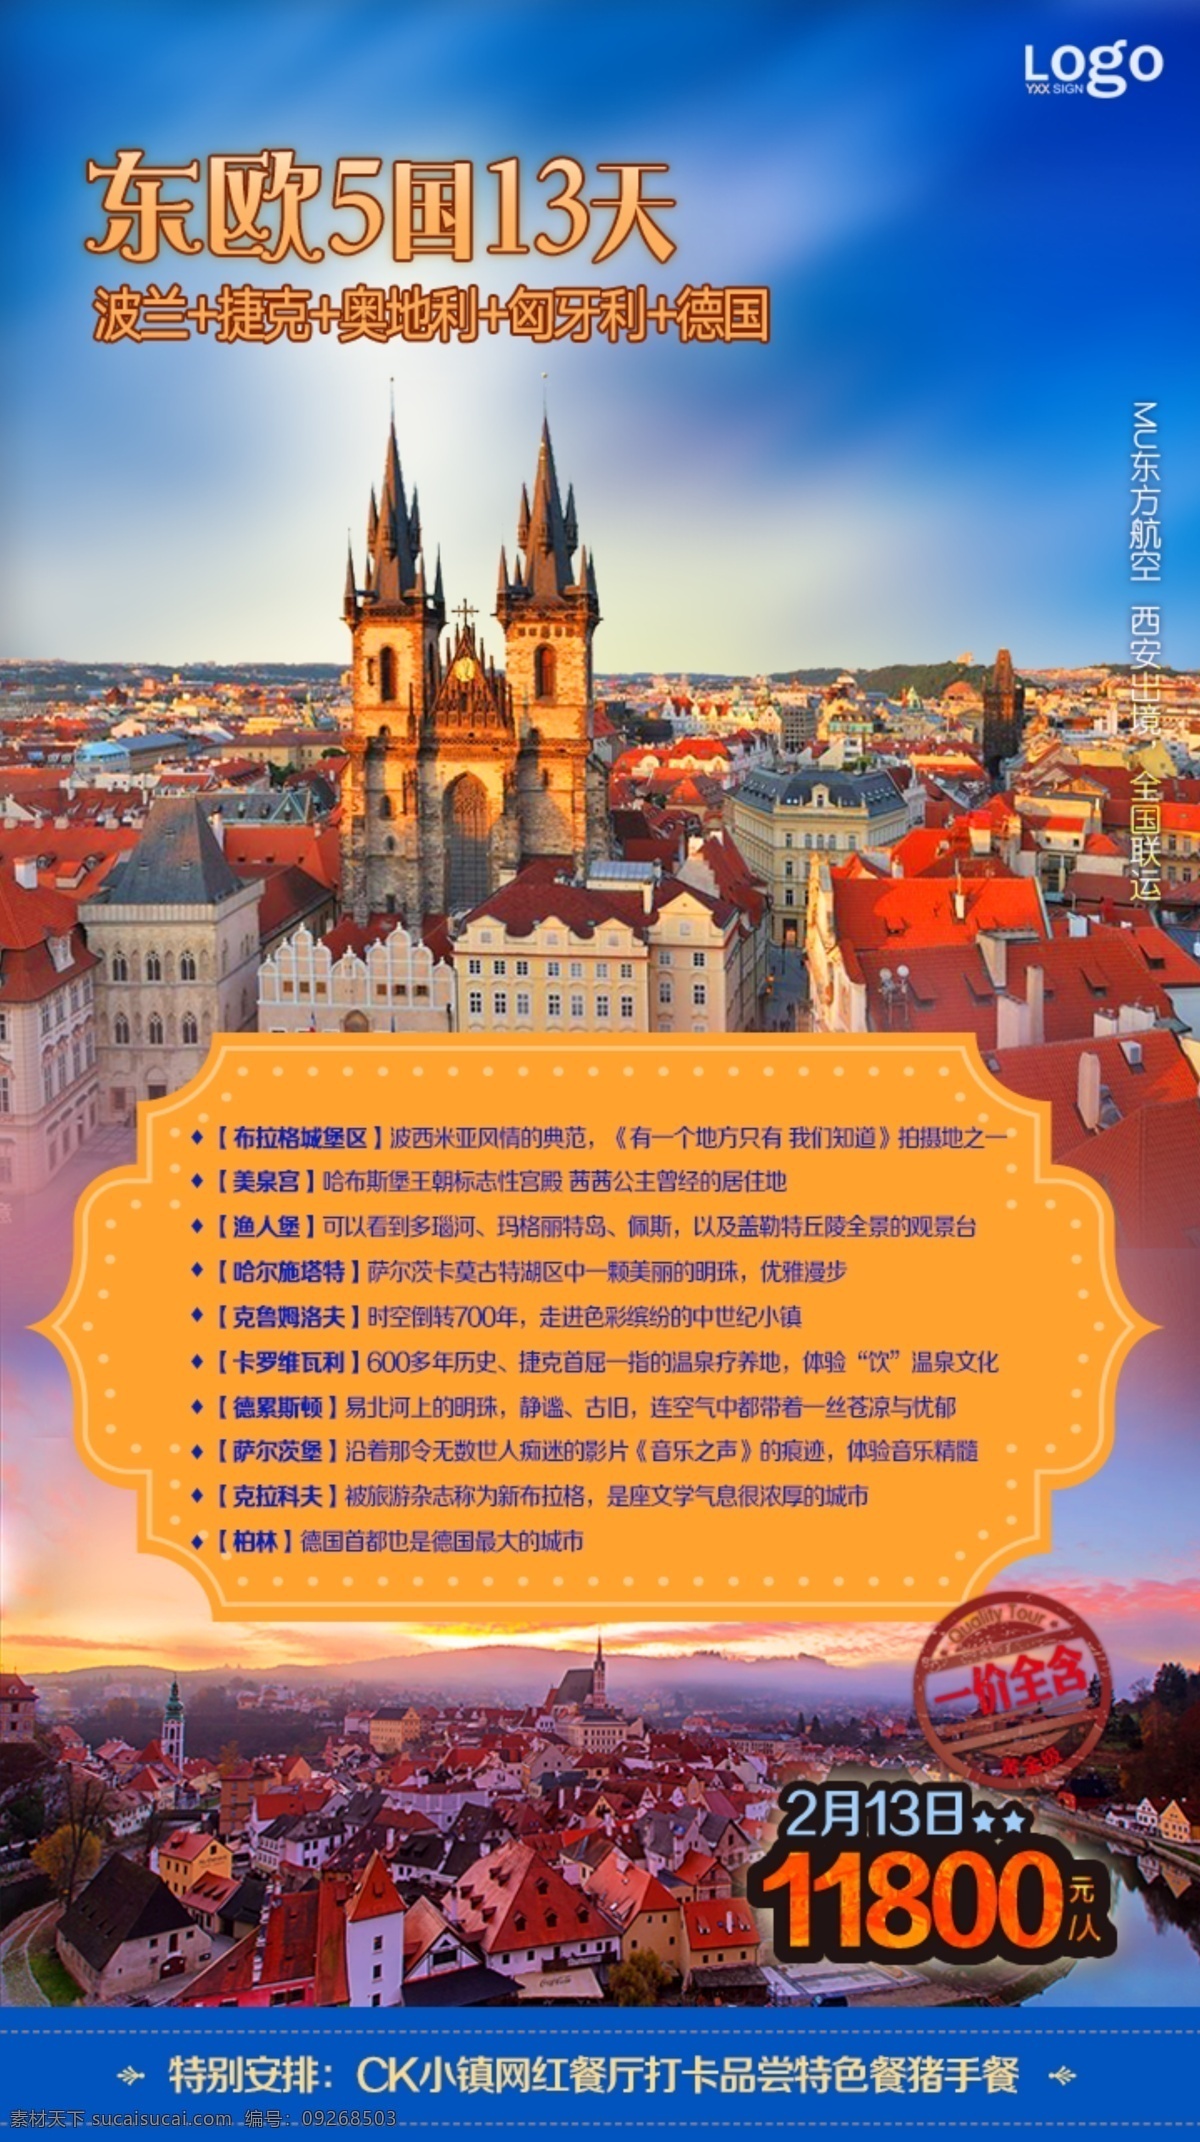 东欧旅游广告 旅游广告 欧洲旅游 捷克旅游